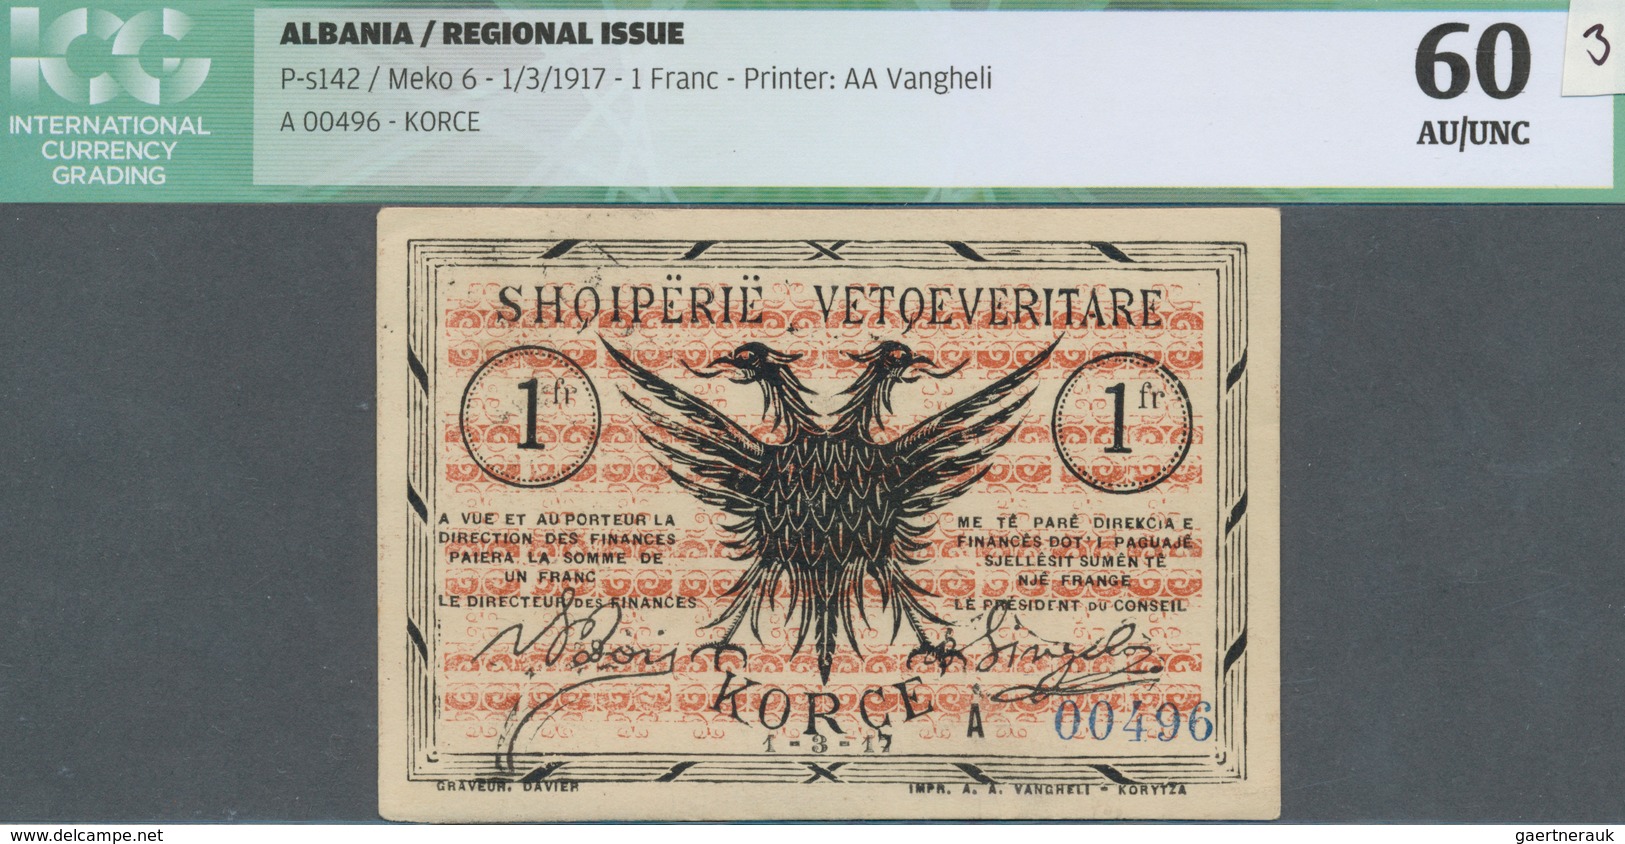 Albania / Albanien: 1 Franc 1917 P. S142, Printer AA Vangheli, S/N #A00496, Unfolded, Light Handling - Albania